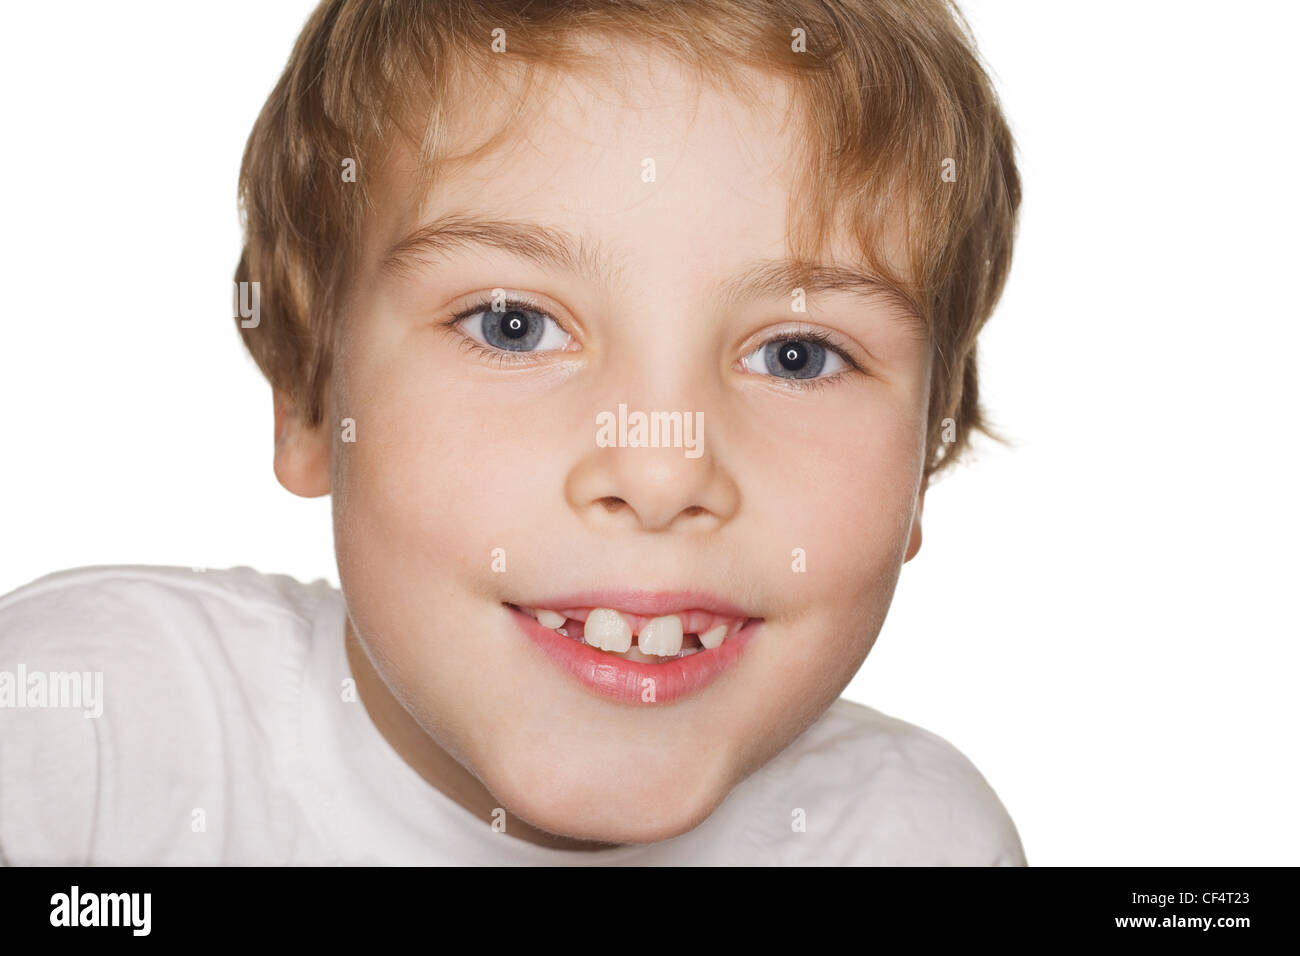 Porträt Kleinkind in einem weißen T-shirt Fotostudio, lächelnd. Ringblitz Stockfoto